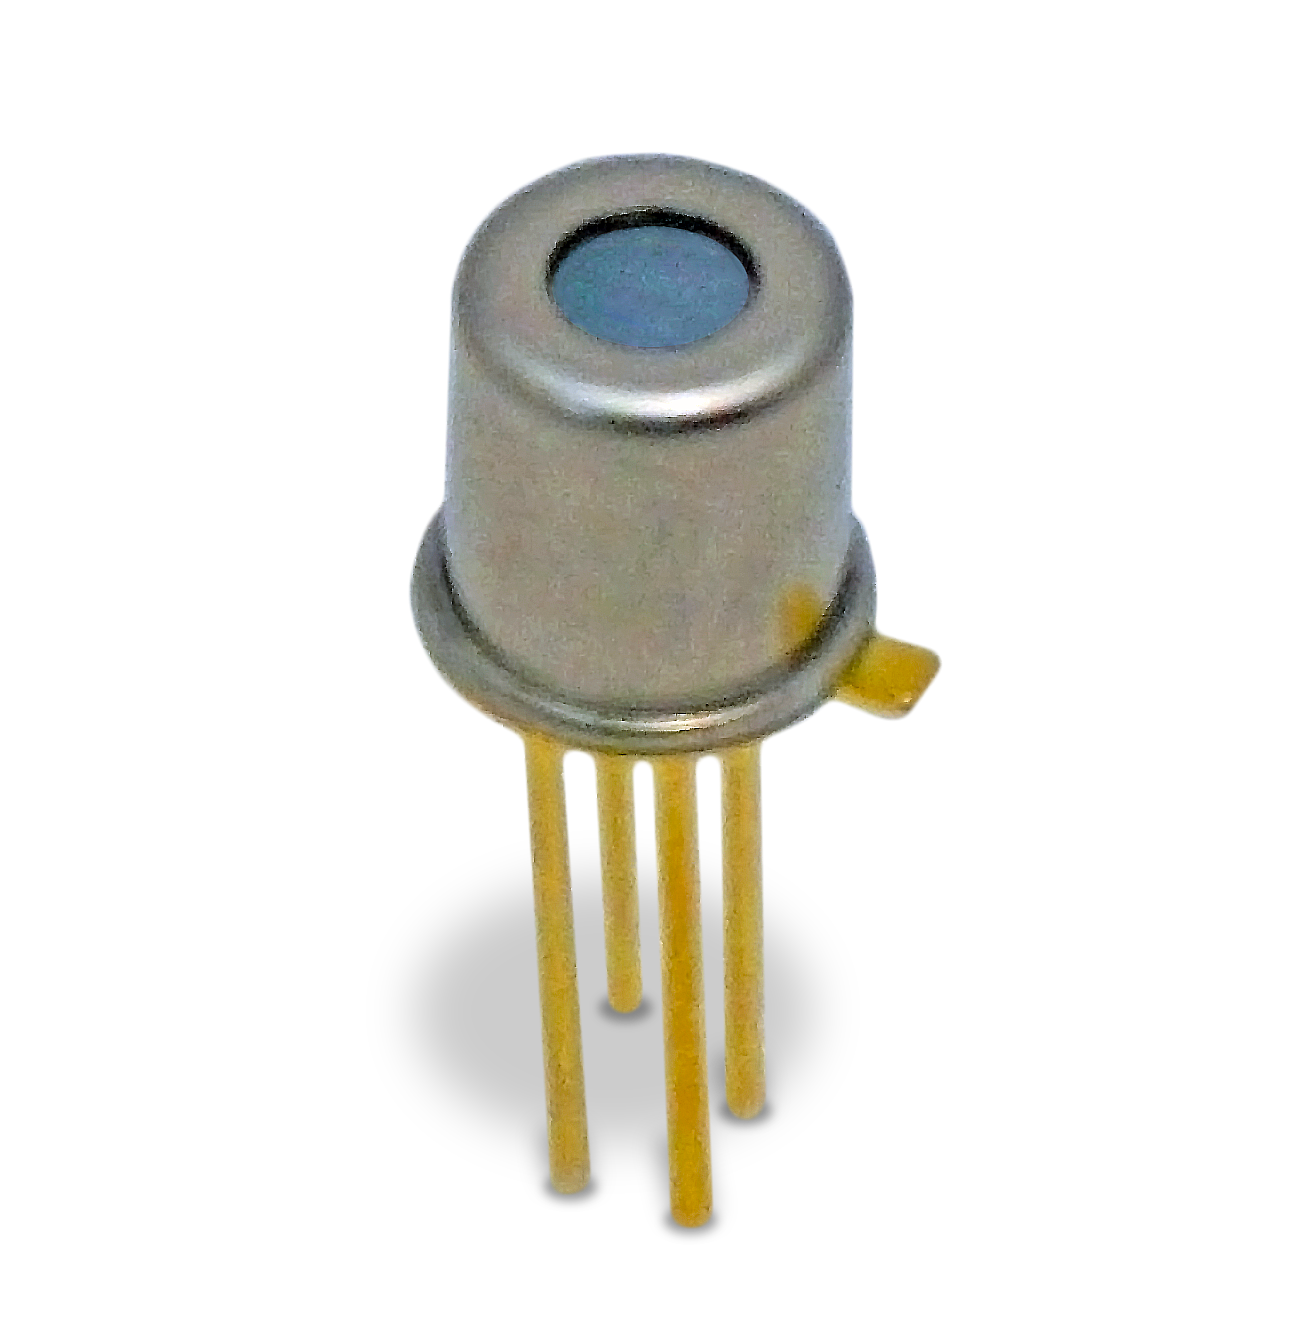 Der NEUE TPiD 1T 0122 L3.0 Thermopile-Detektor von Excelitas besitzt ein Mini-TO-46-Gehäuse und eine Fokussierlinse.